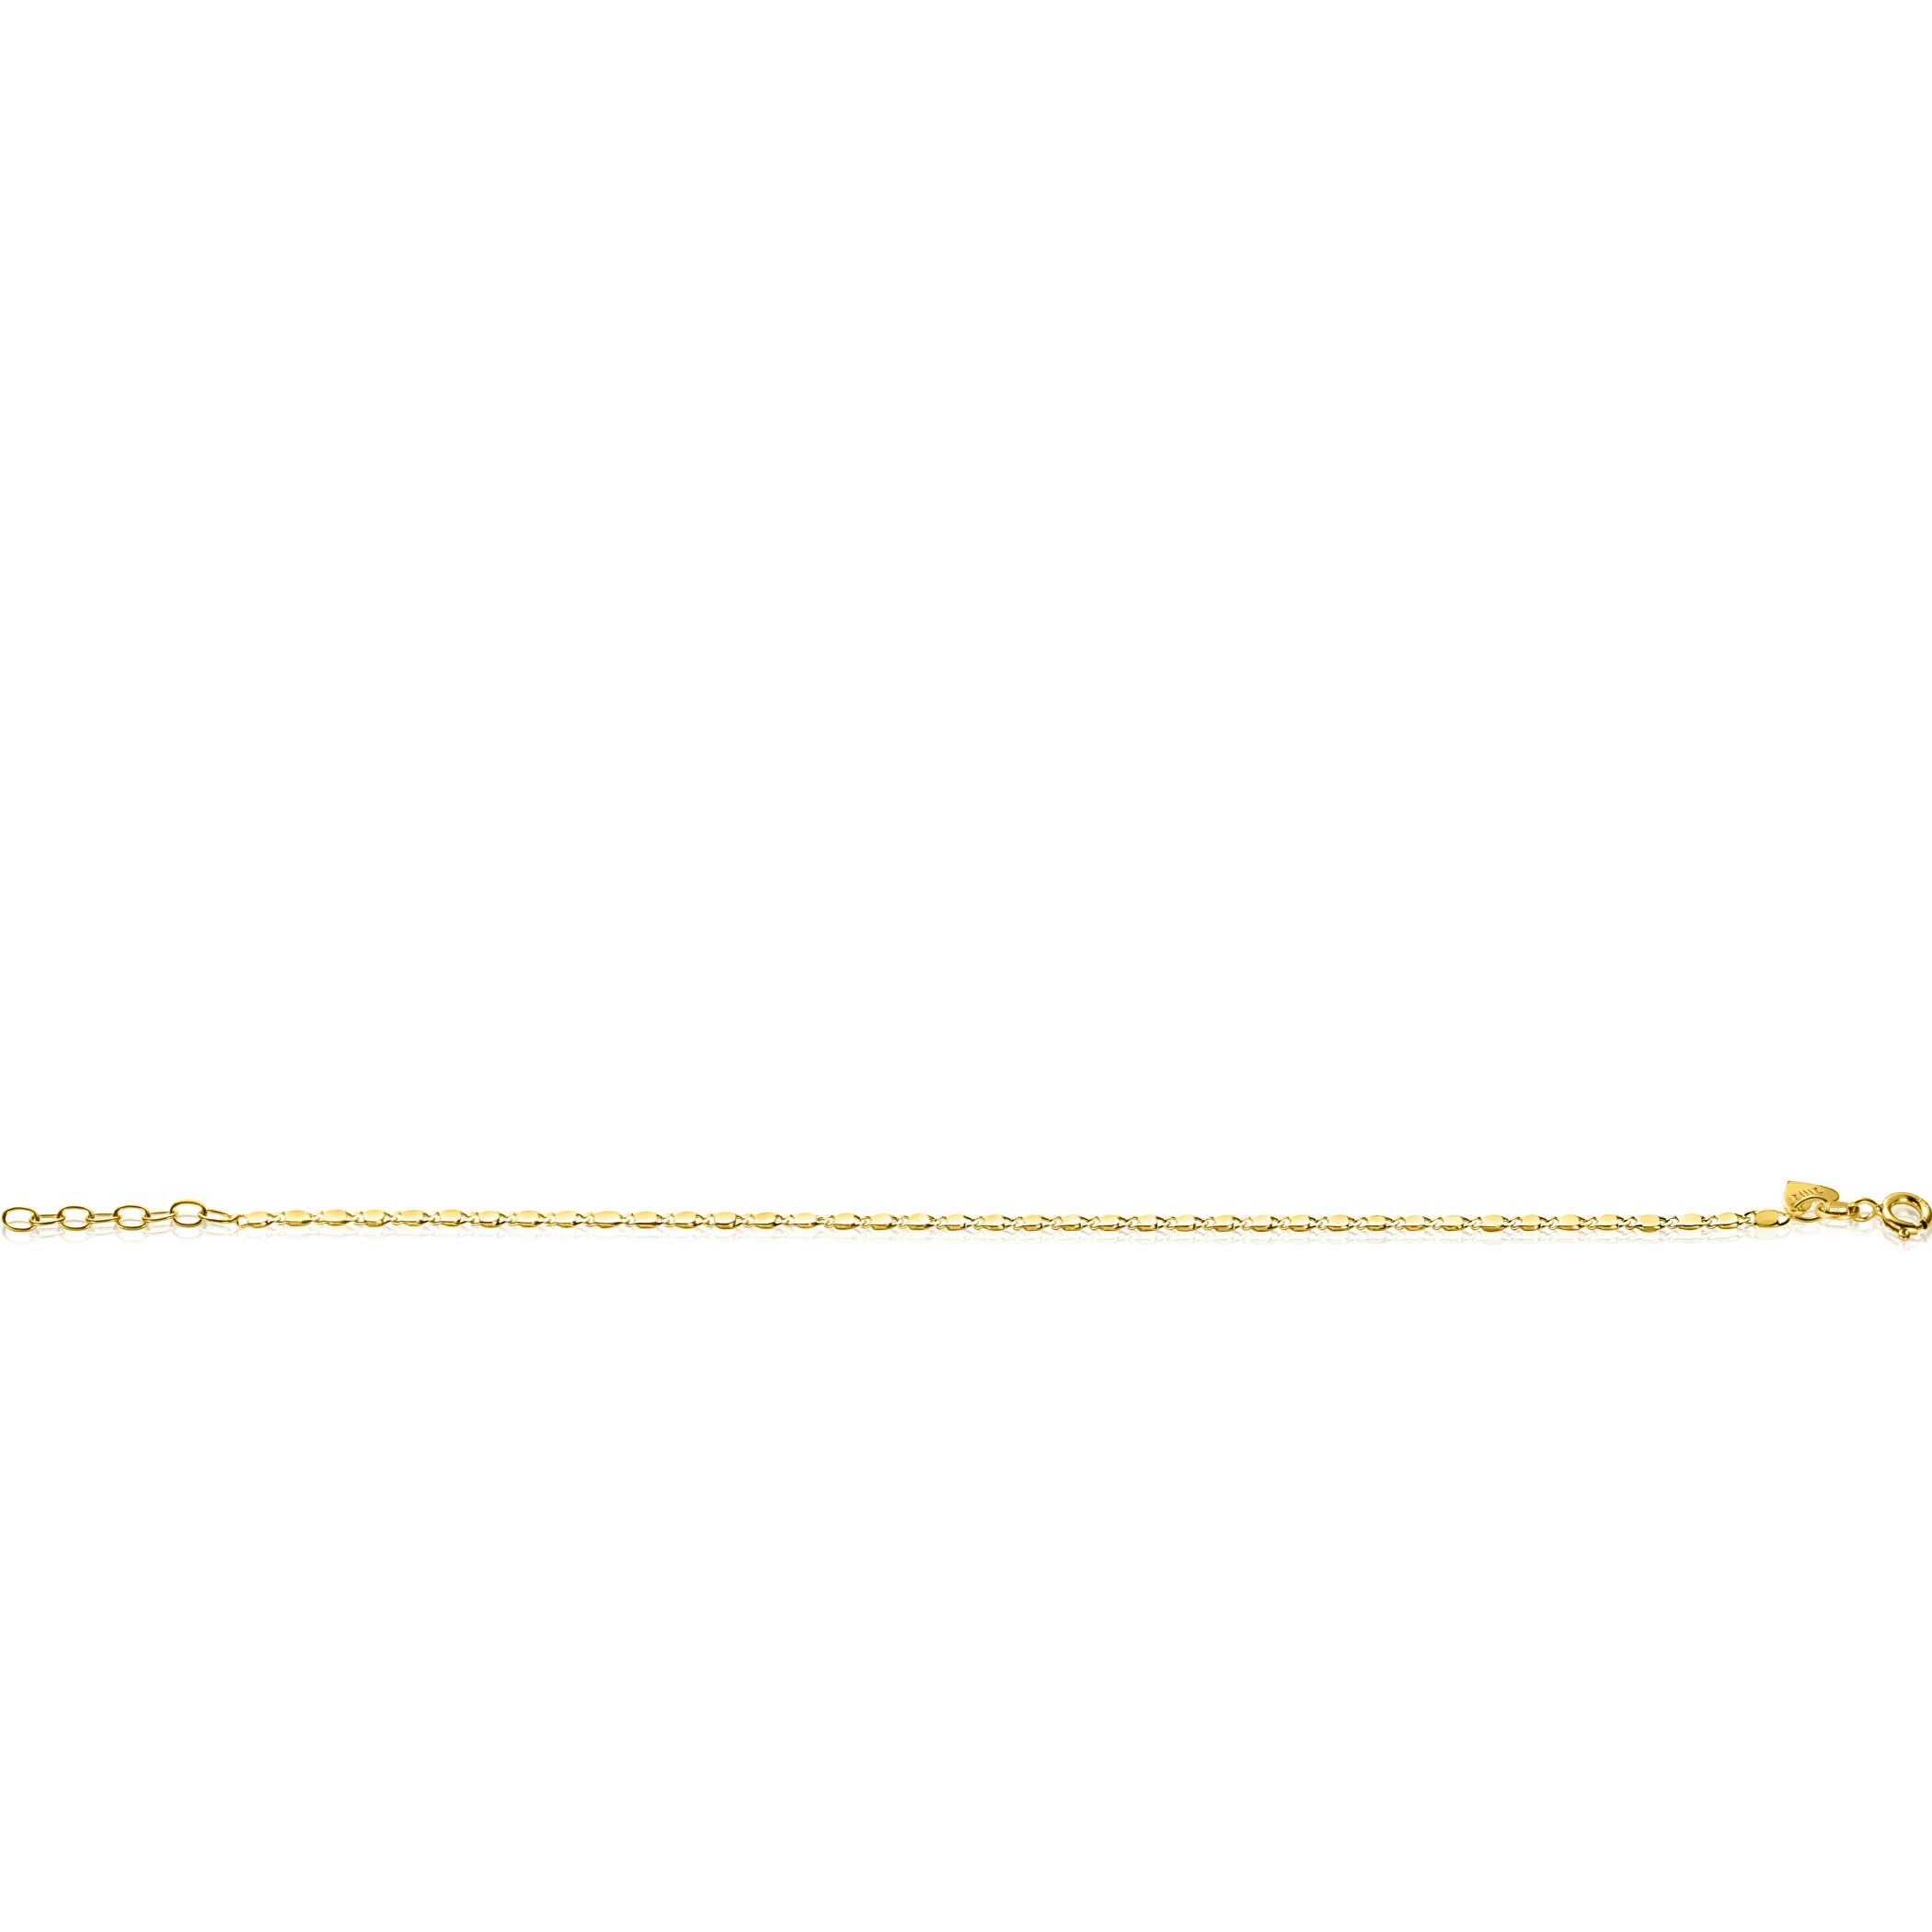 ZINZI Gold 14 karaat gouden massieve armband met glanzende fantasie plaatjes 1,7mm breed 17-19cm ZGA497
